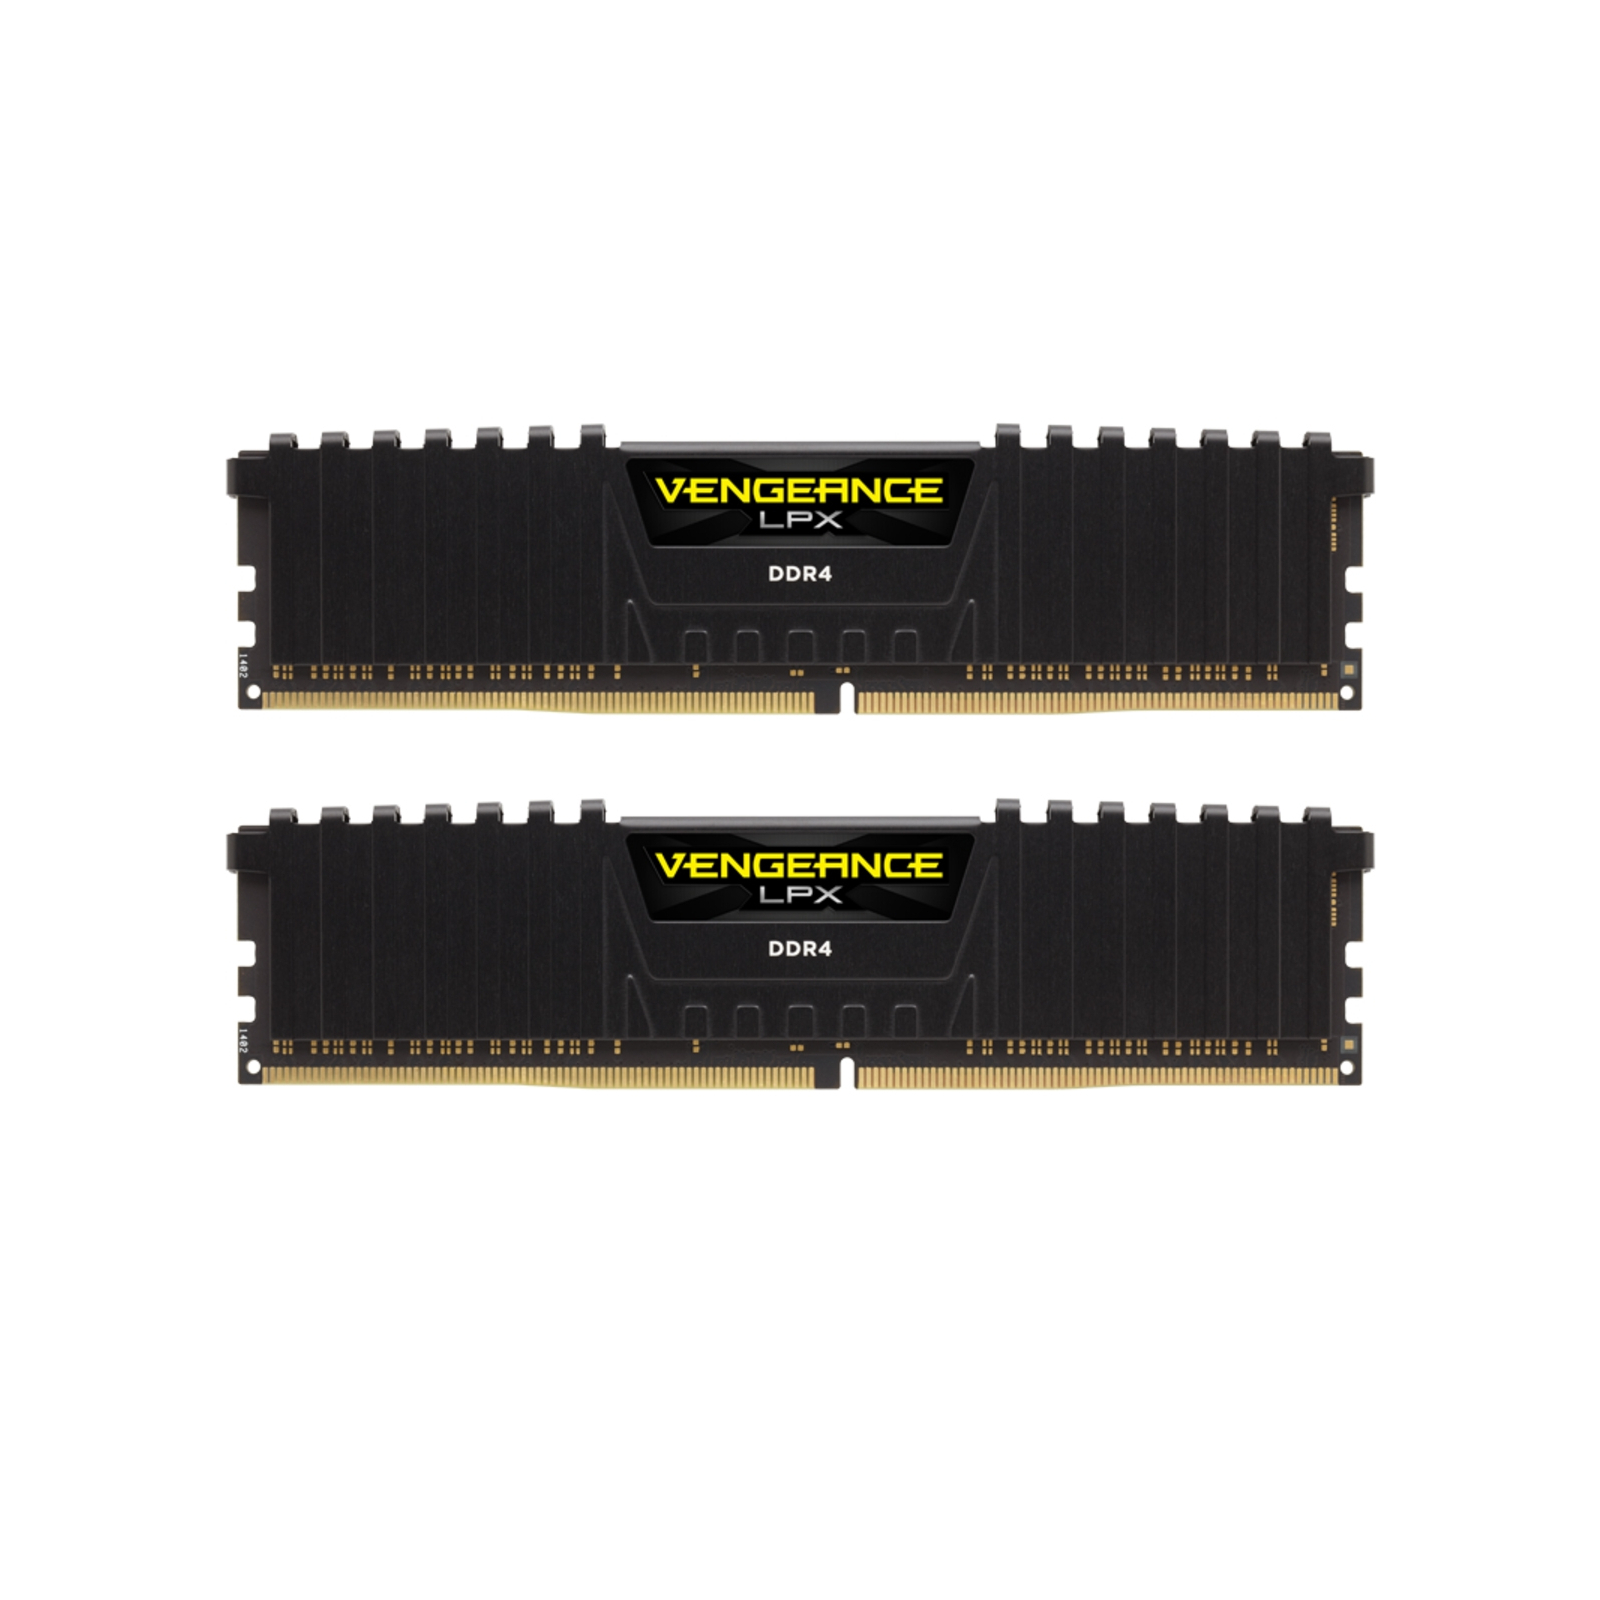 Модуль памяти для компьютера DDR4 32GB (2x16GB) 3200 MHz Vengeance LPX Black Corsair (CMK32GX4M2E3200C16)